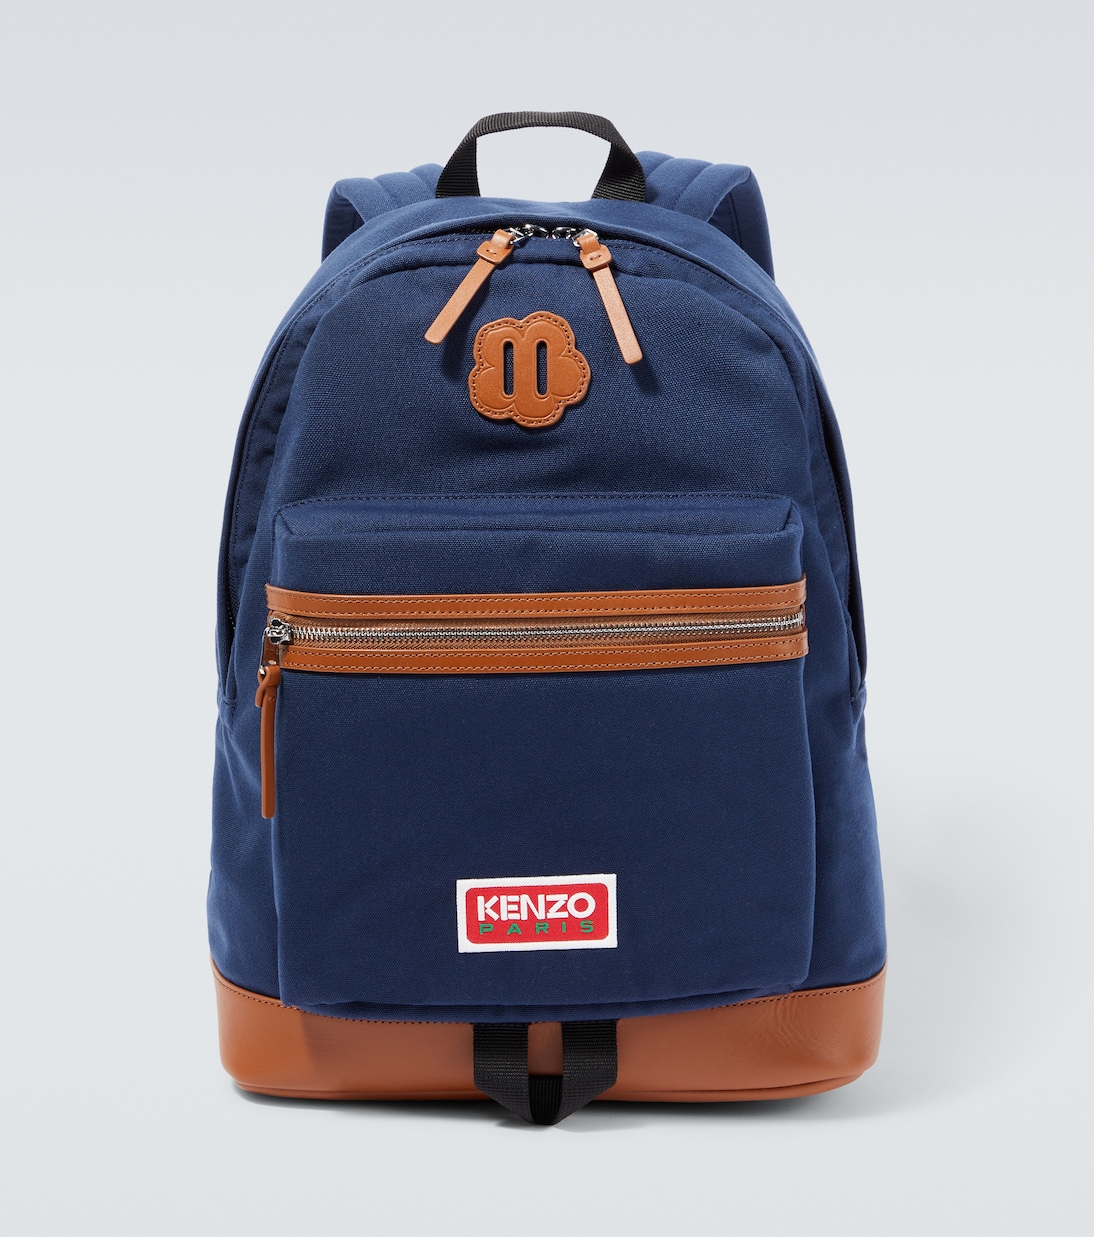 Холщовый рюкзак explore Kenzo, синий большой вместительный холщовый рюкзак hdirsg женский холщовый рюкзак студенческая школьная сумка холщовый рюкзак на молнии для студентов